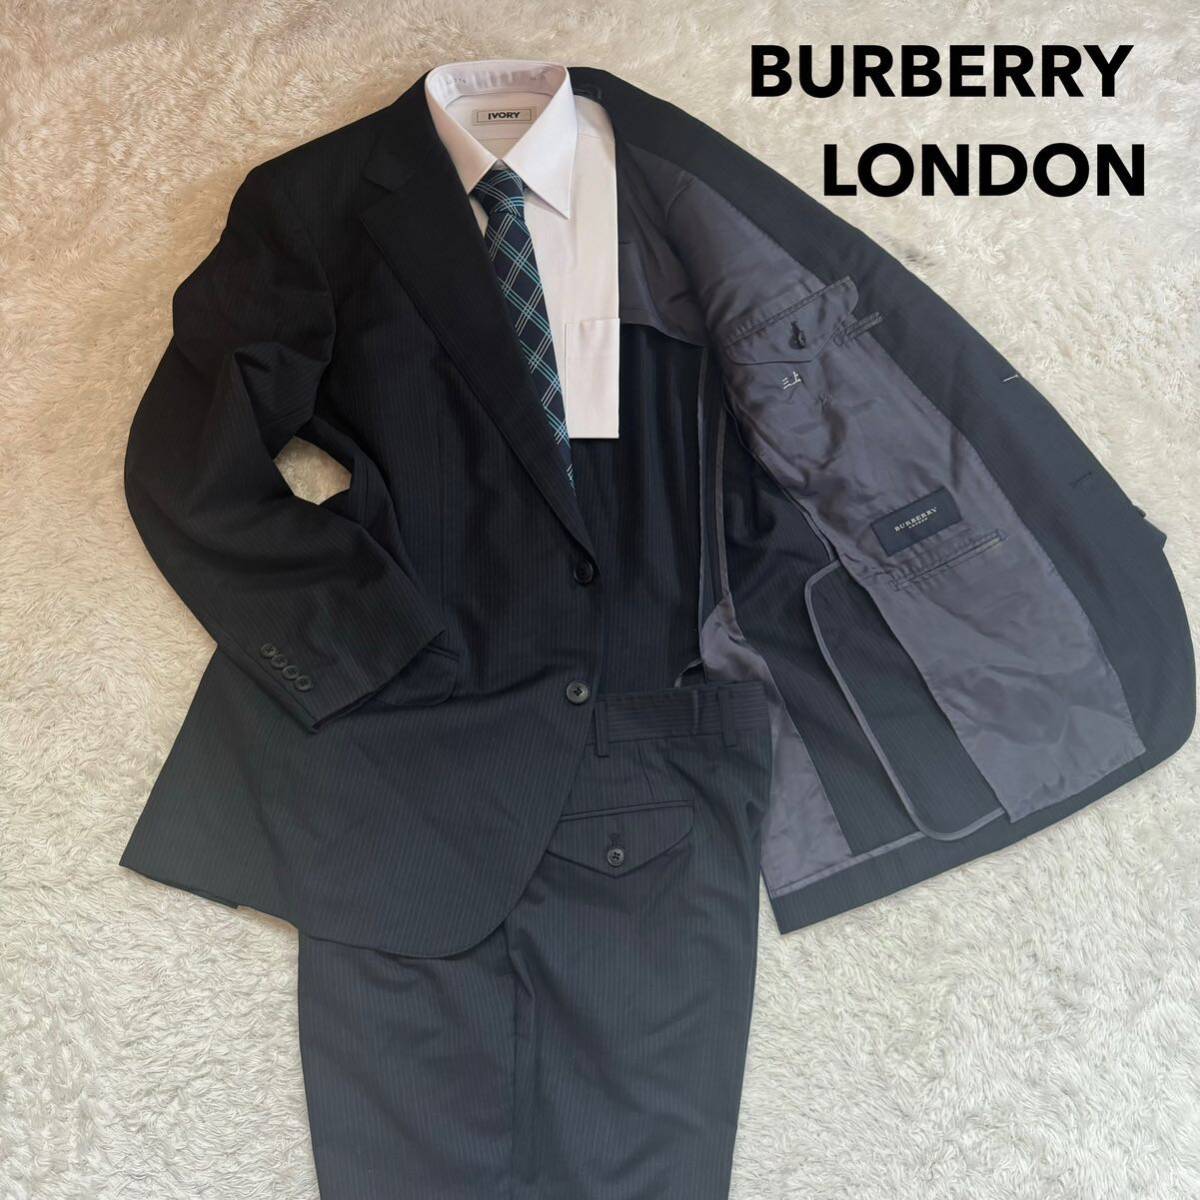 [BURBERRY LONDON] Burberry London BB5(L размер степень ) полоса темно-серый костюм выставить необшитый на спине мужской mo волосы .